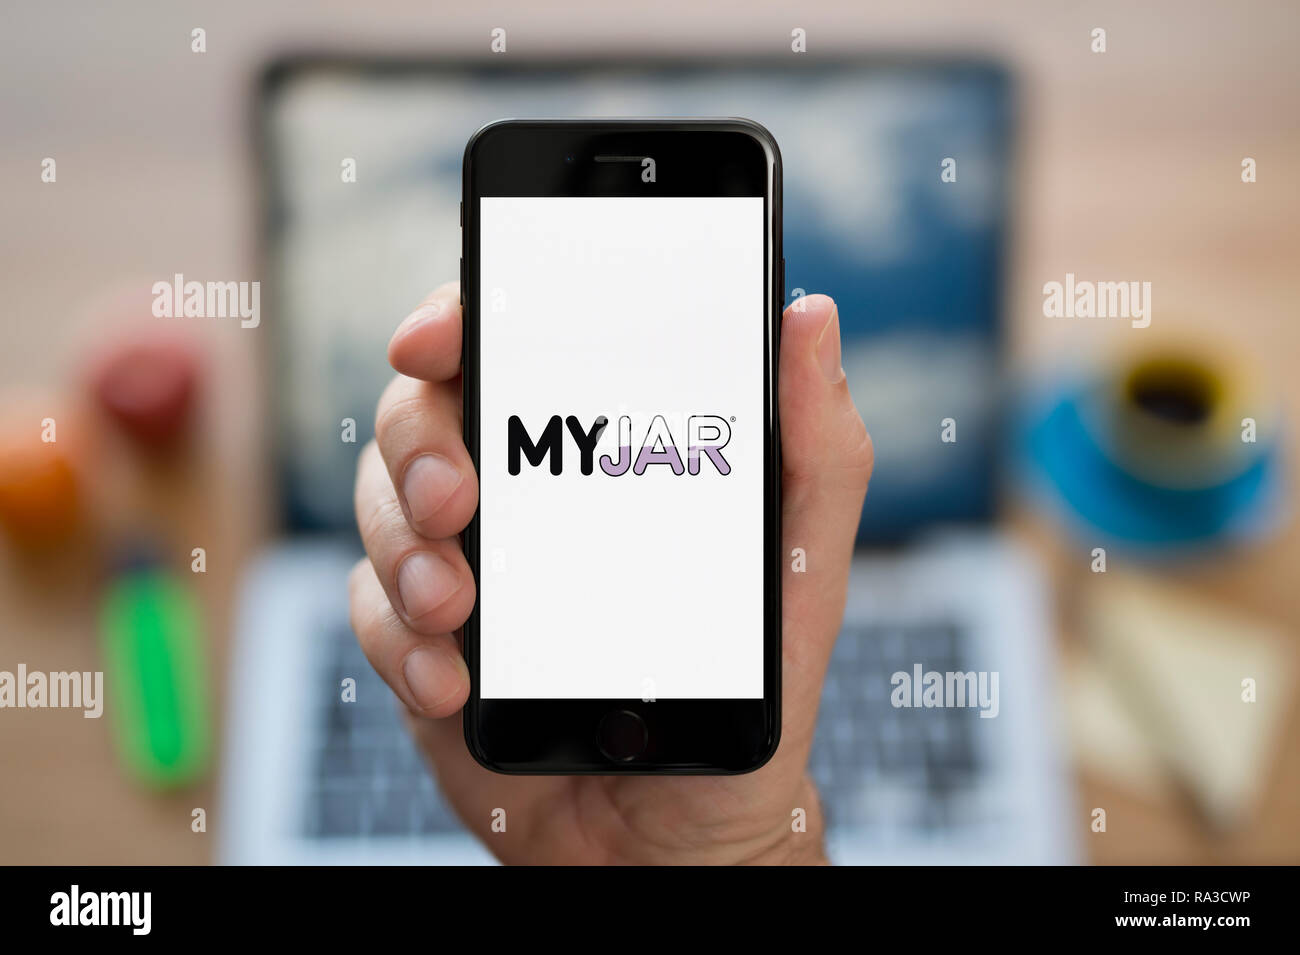 Un uomo guarda al suo iPhone che visualizza il logo MyJar (solo uso editoriale). Foto Stock